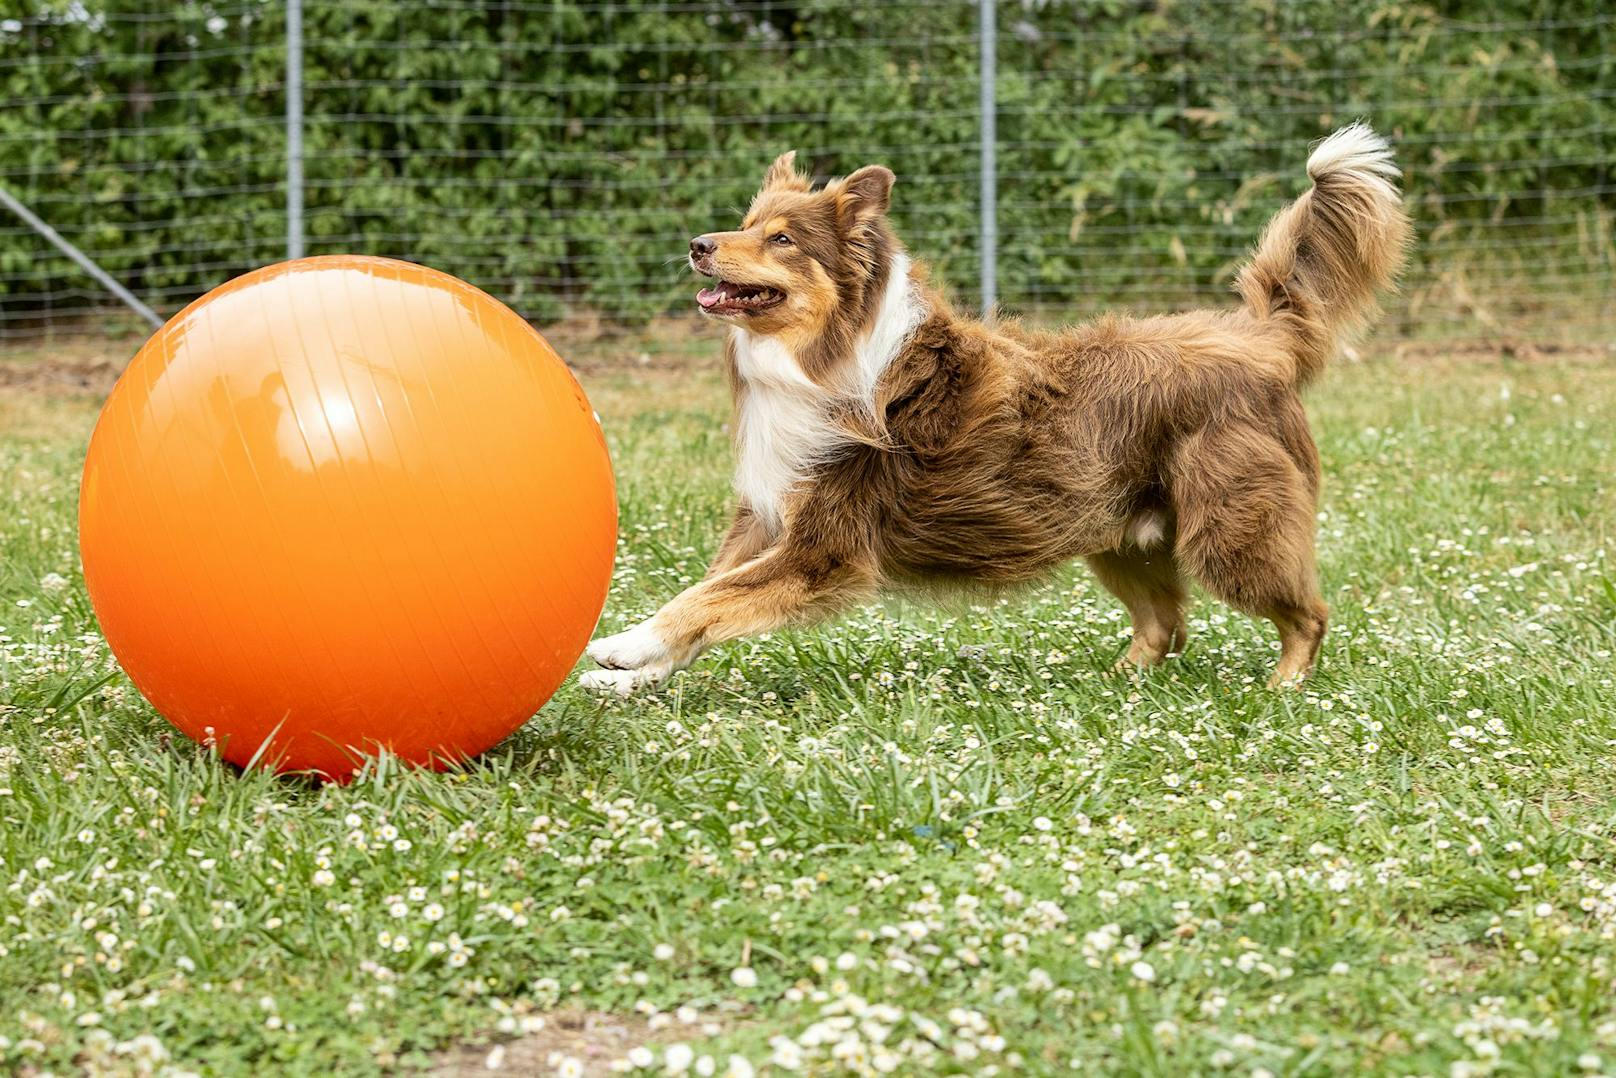 Der Hund muss hier zunächst lernen, seinen Impuls zu kontrollieren den Ball "widerrechtlich" zu bewegen. 